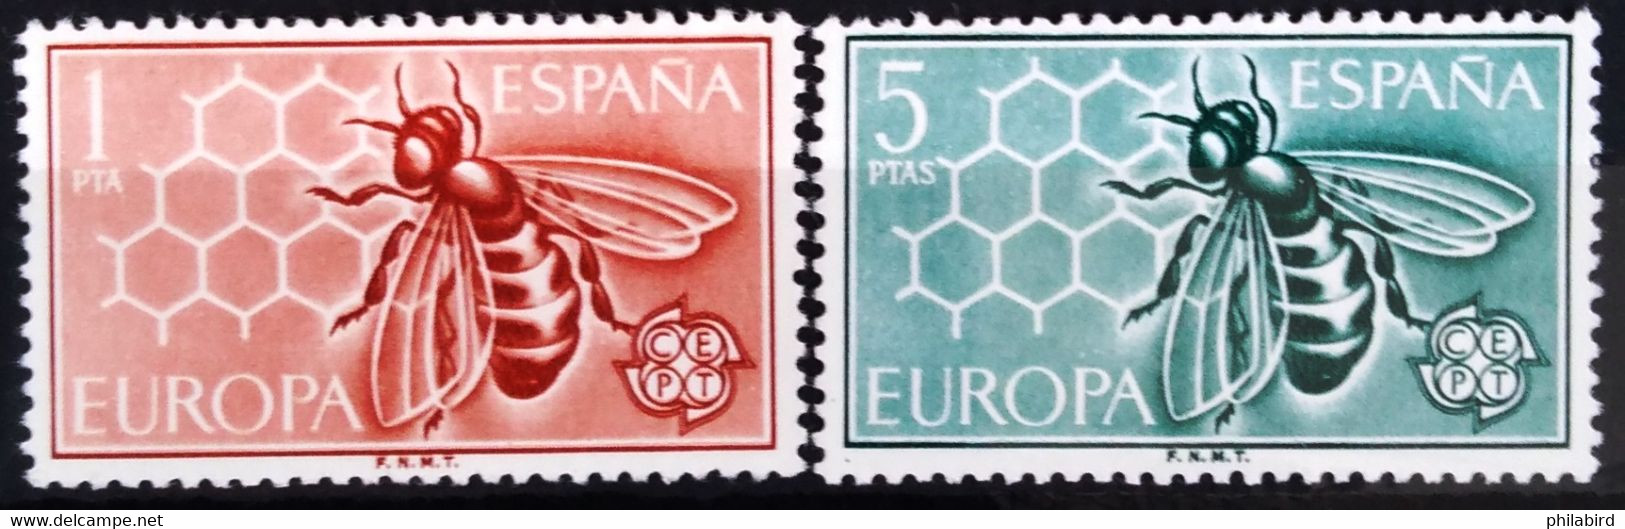 EUROPA 1962 - ESPAGNE                    N° 1119/1120                        NEUF** - 1962